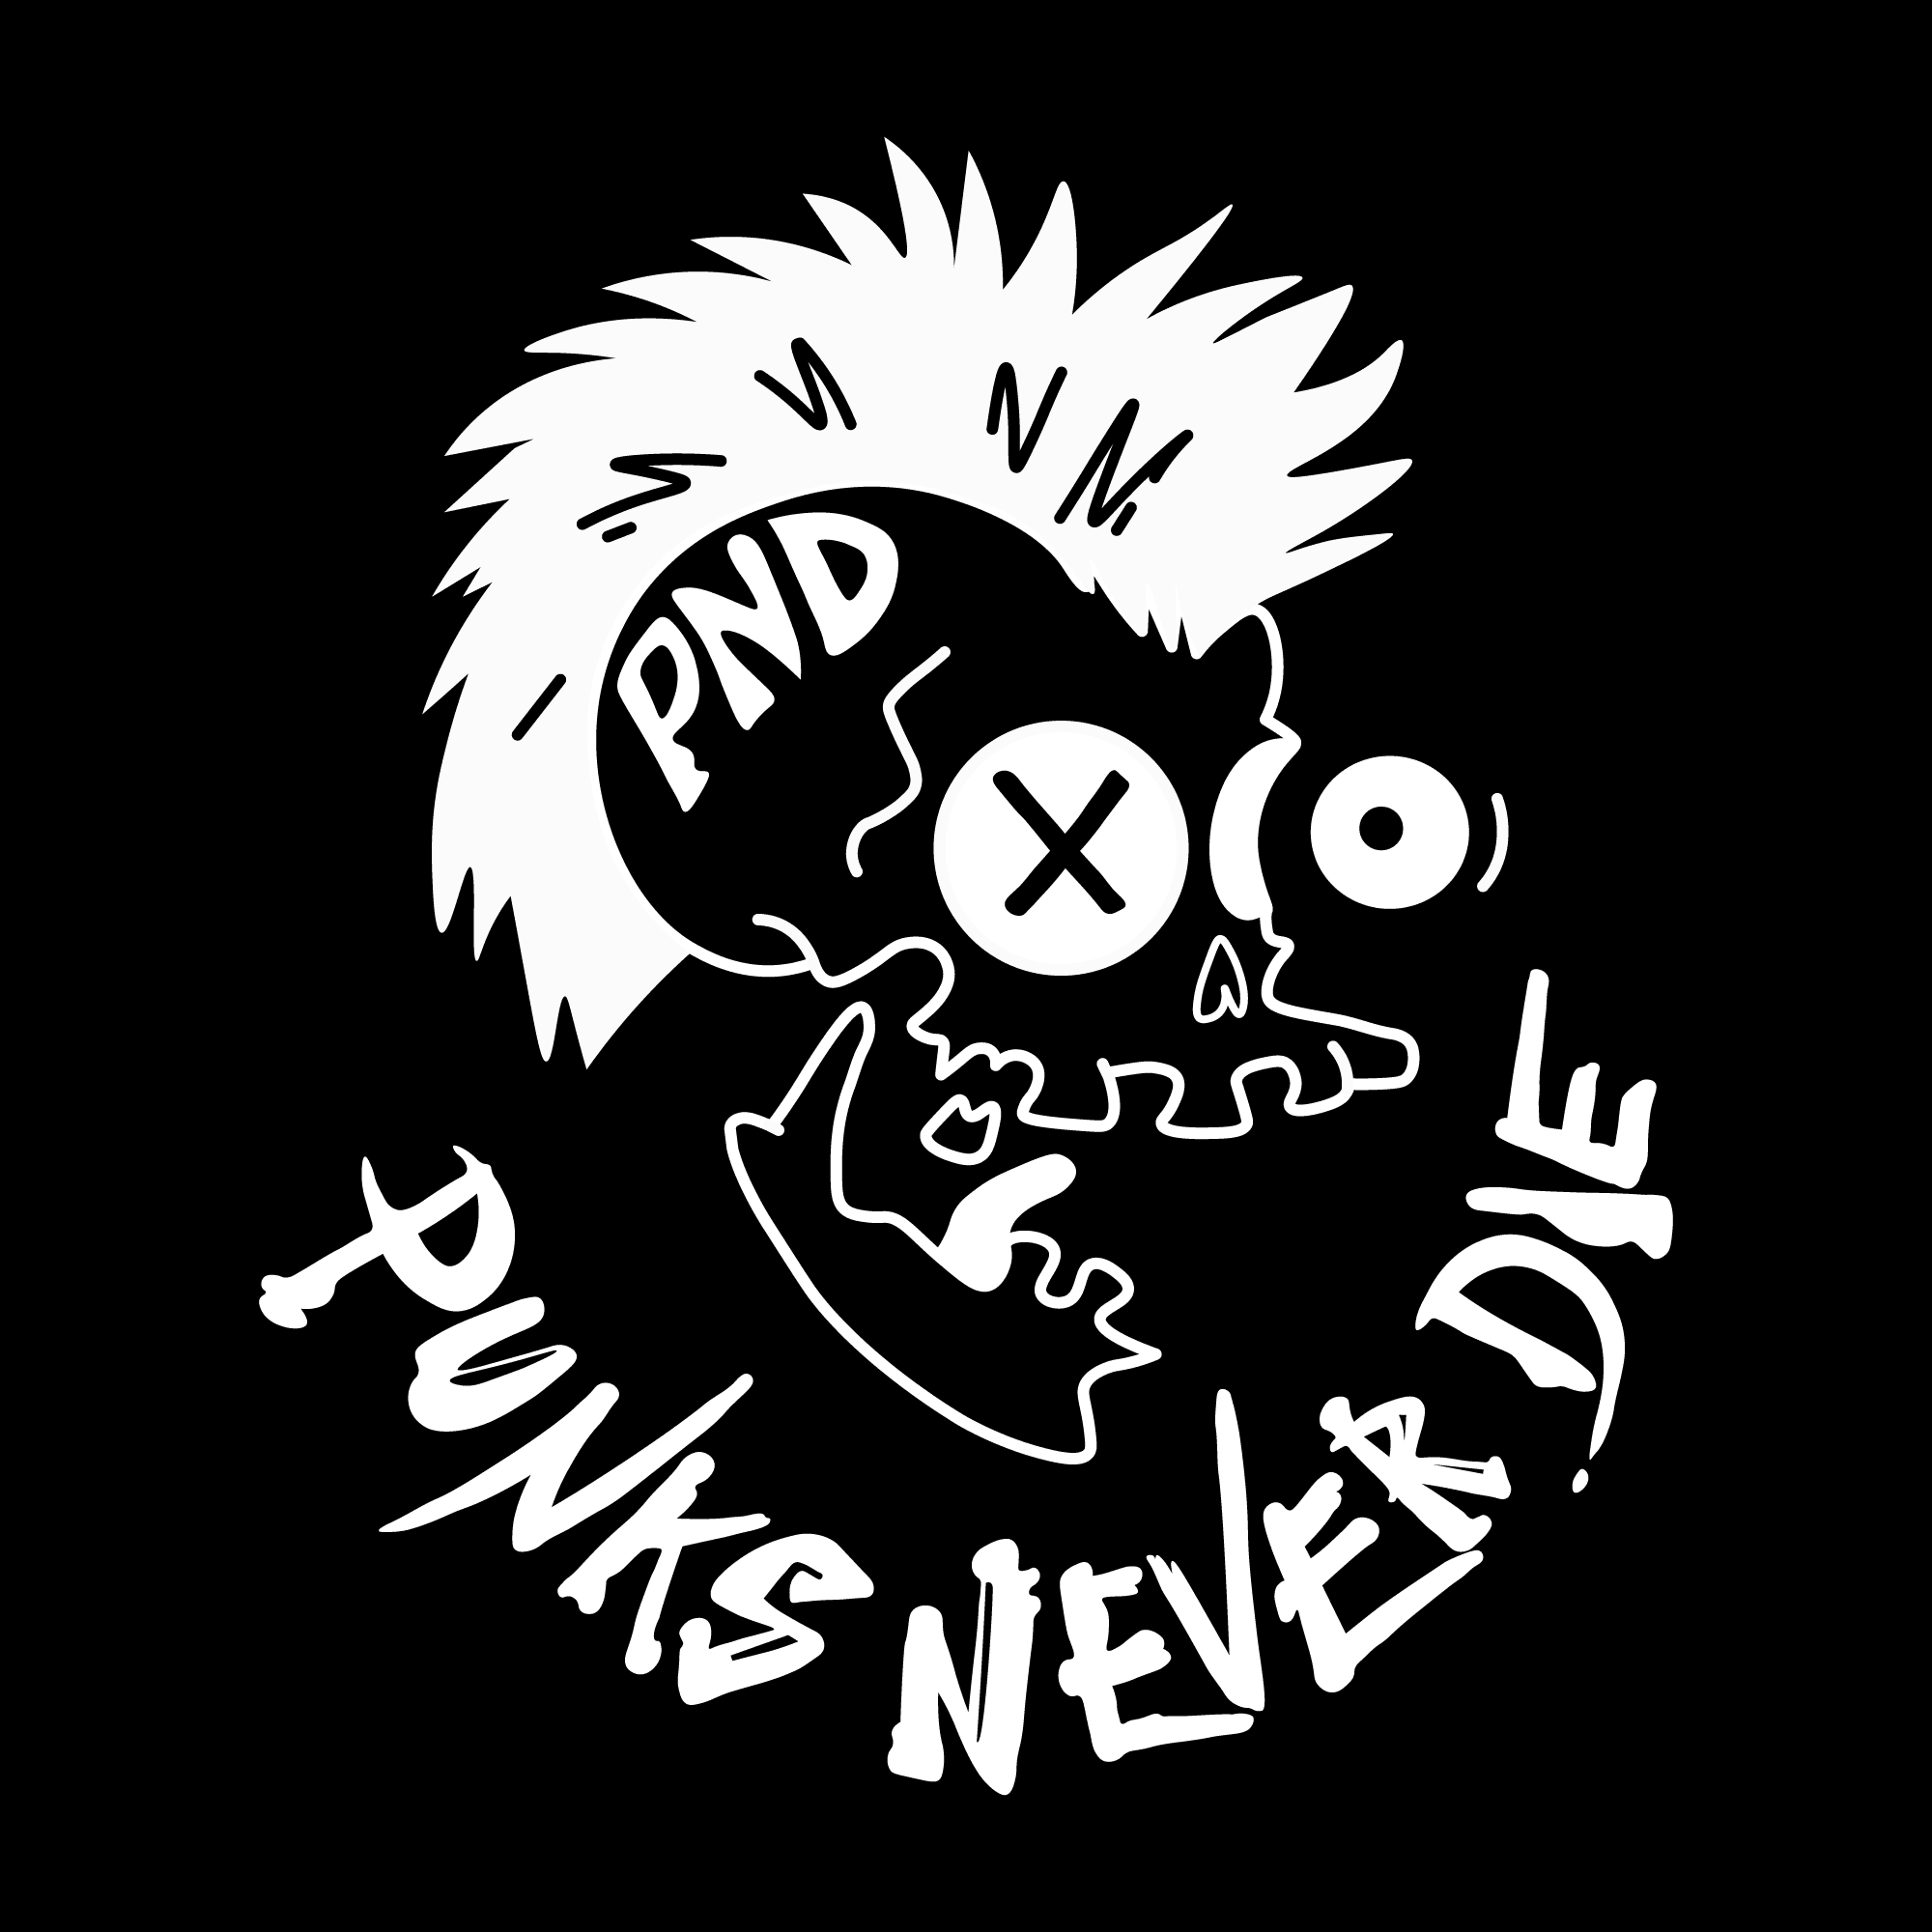 PND: Punks Never Die